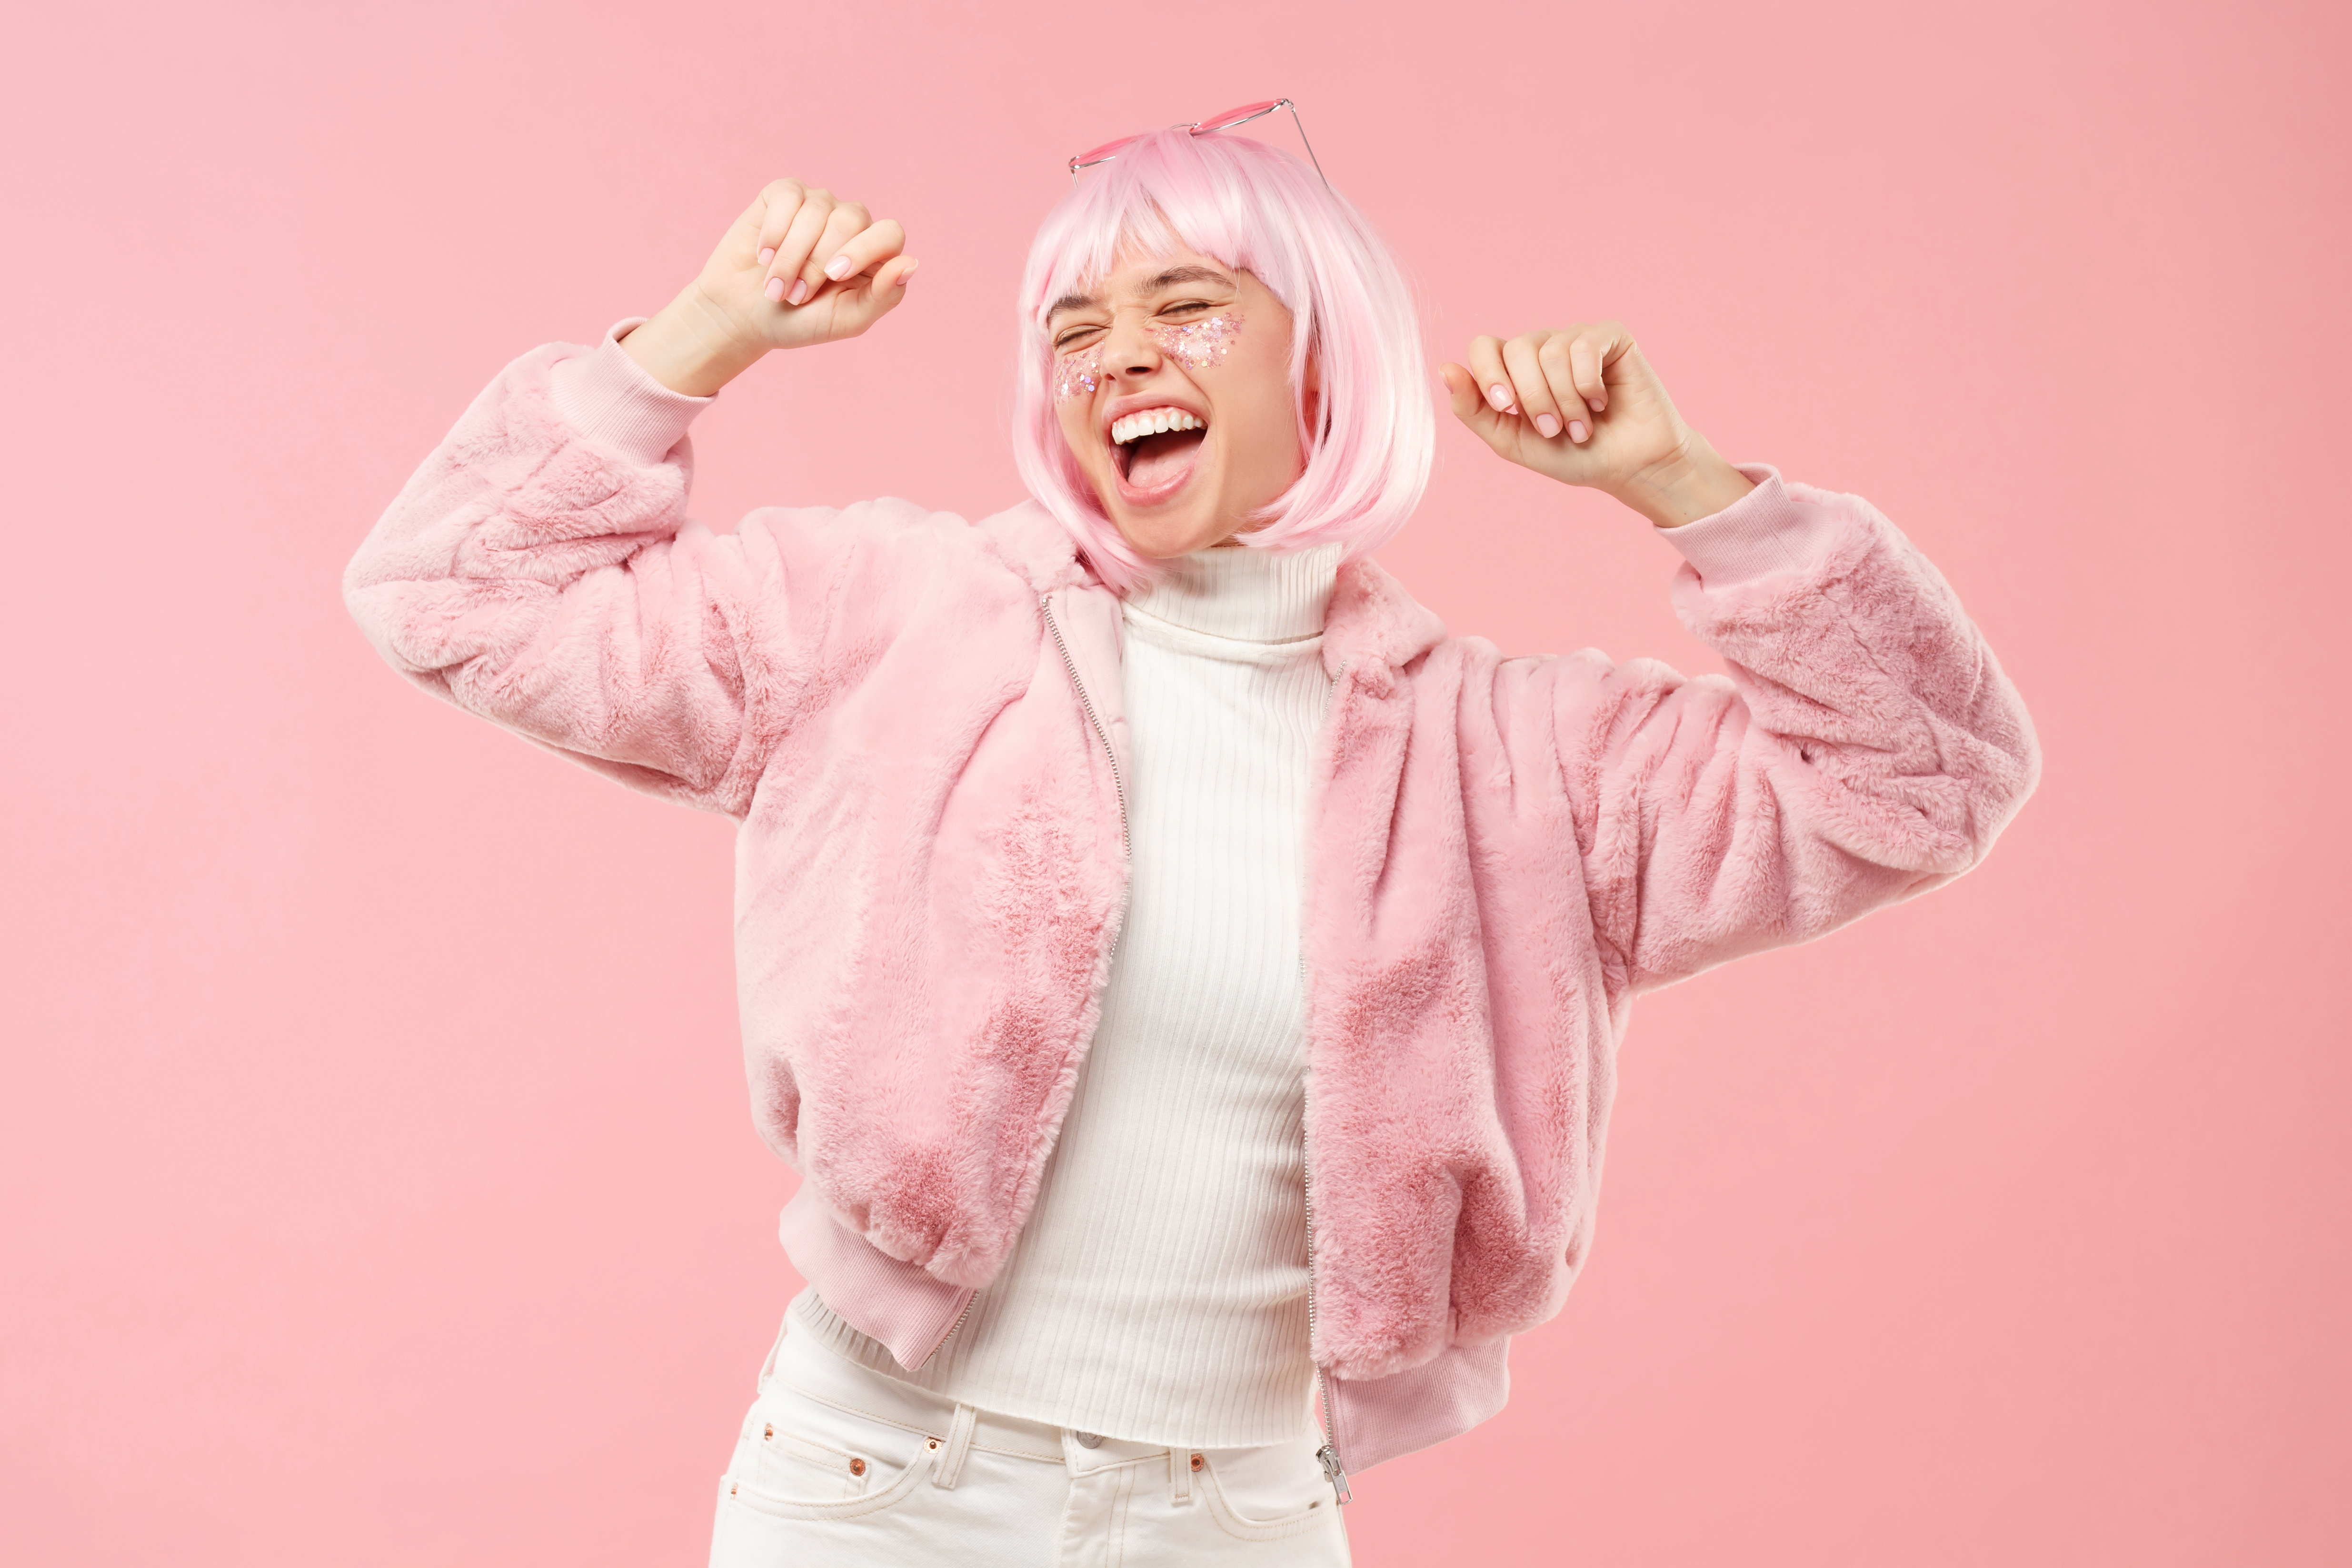 Aufgeregtes jugendliches Mädchen, das zu Musik tanzt und jubelt, mit flauschigem Pelzmantel und bunten Haaren auf einer Party, isoliert auf rosa Hintergrund | Quelle: Getty Images